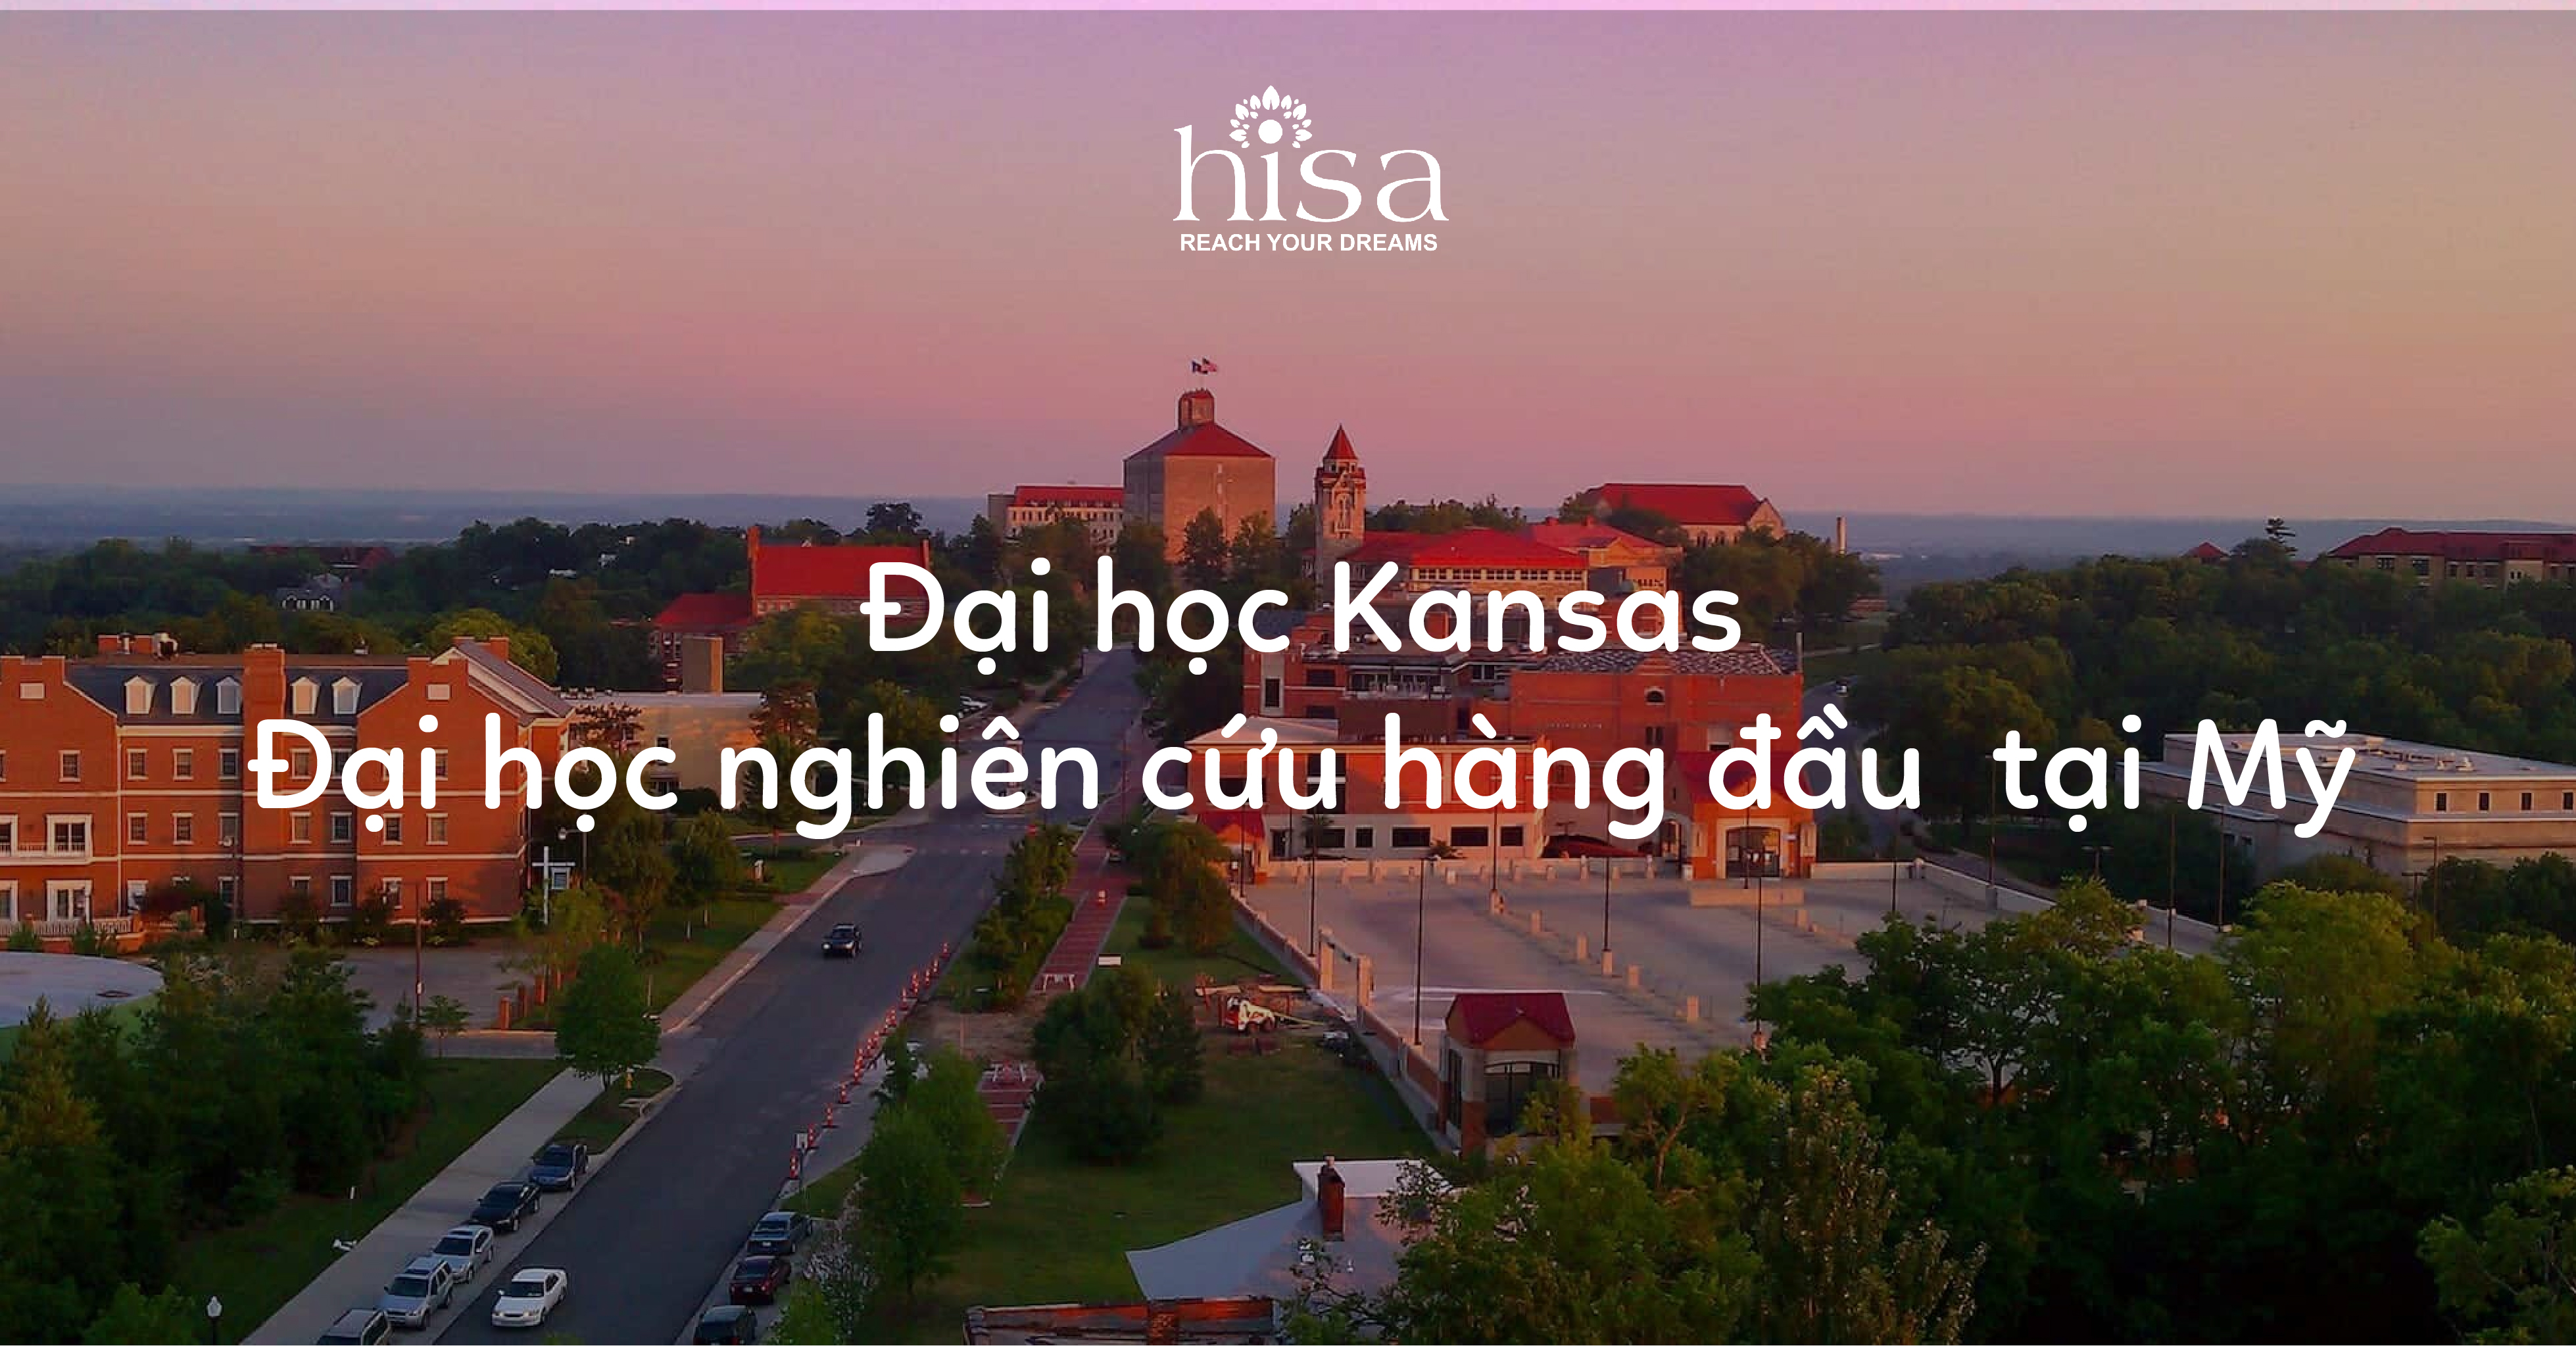 Đại học Kansas - Đại học nghiên cứu hàng đầu tại Mỹ